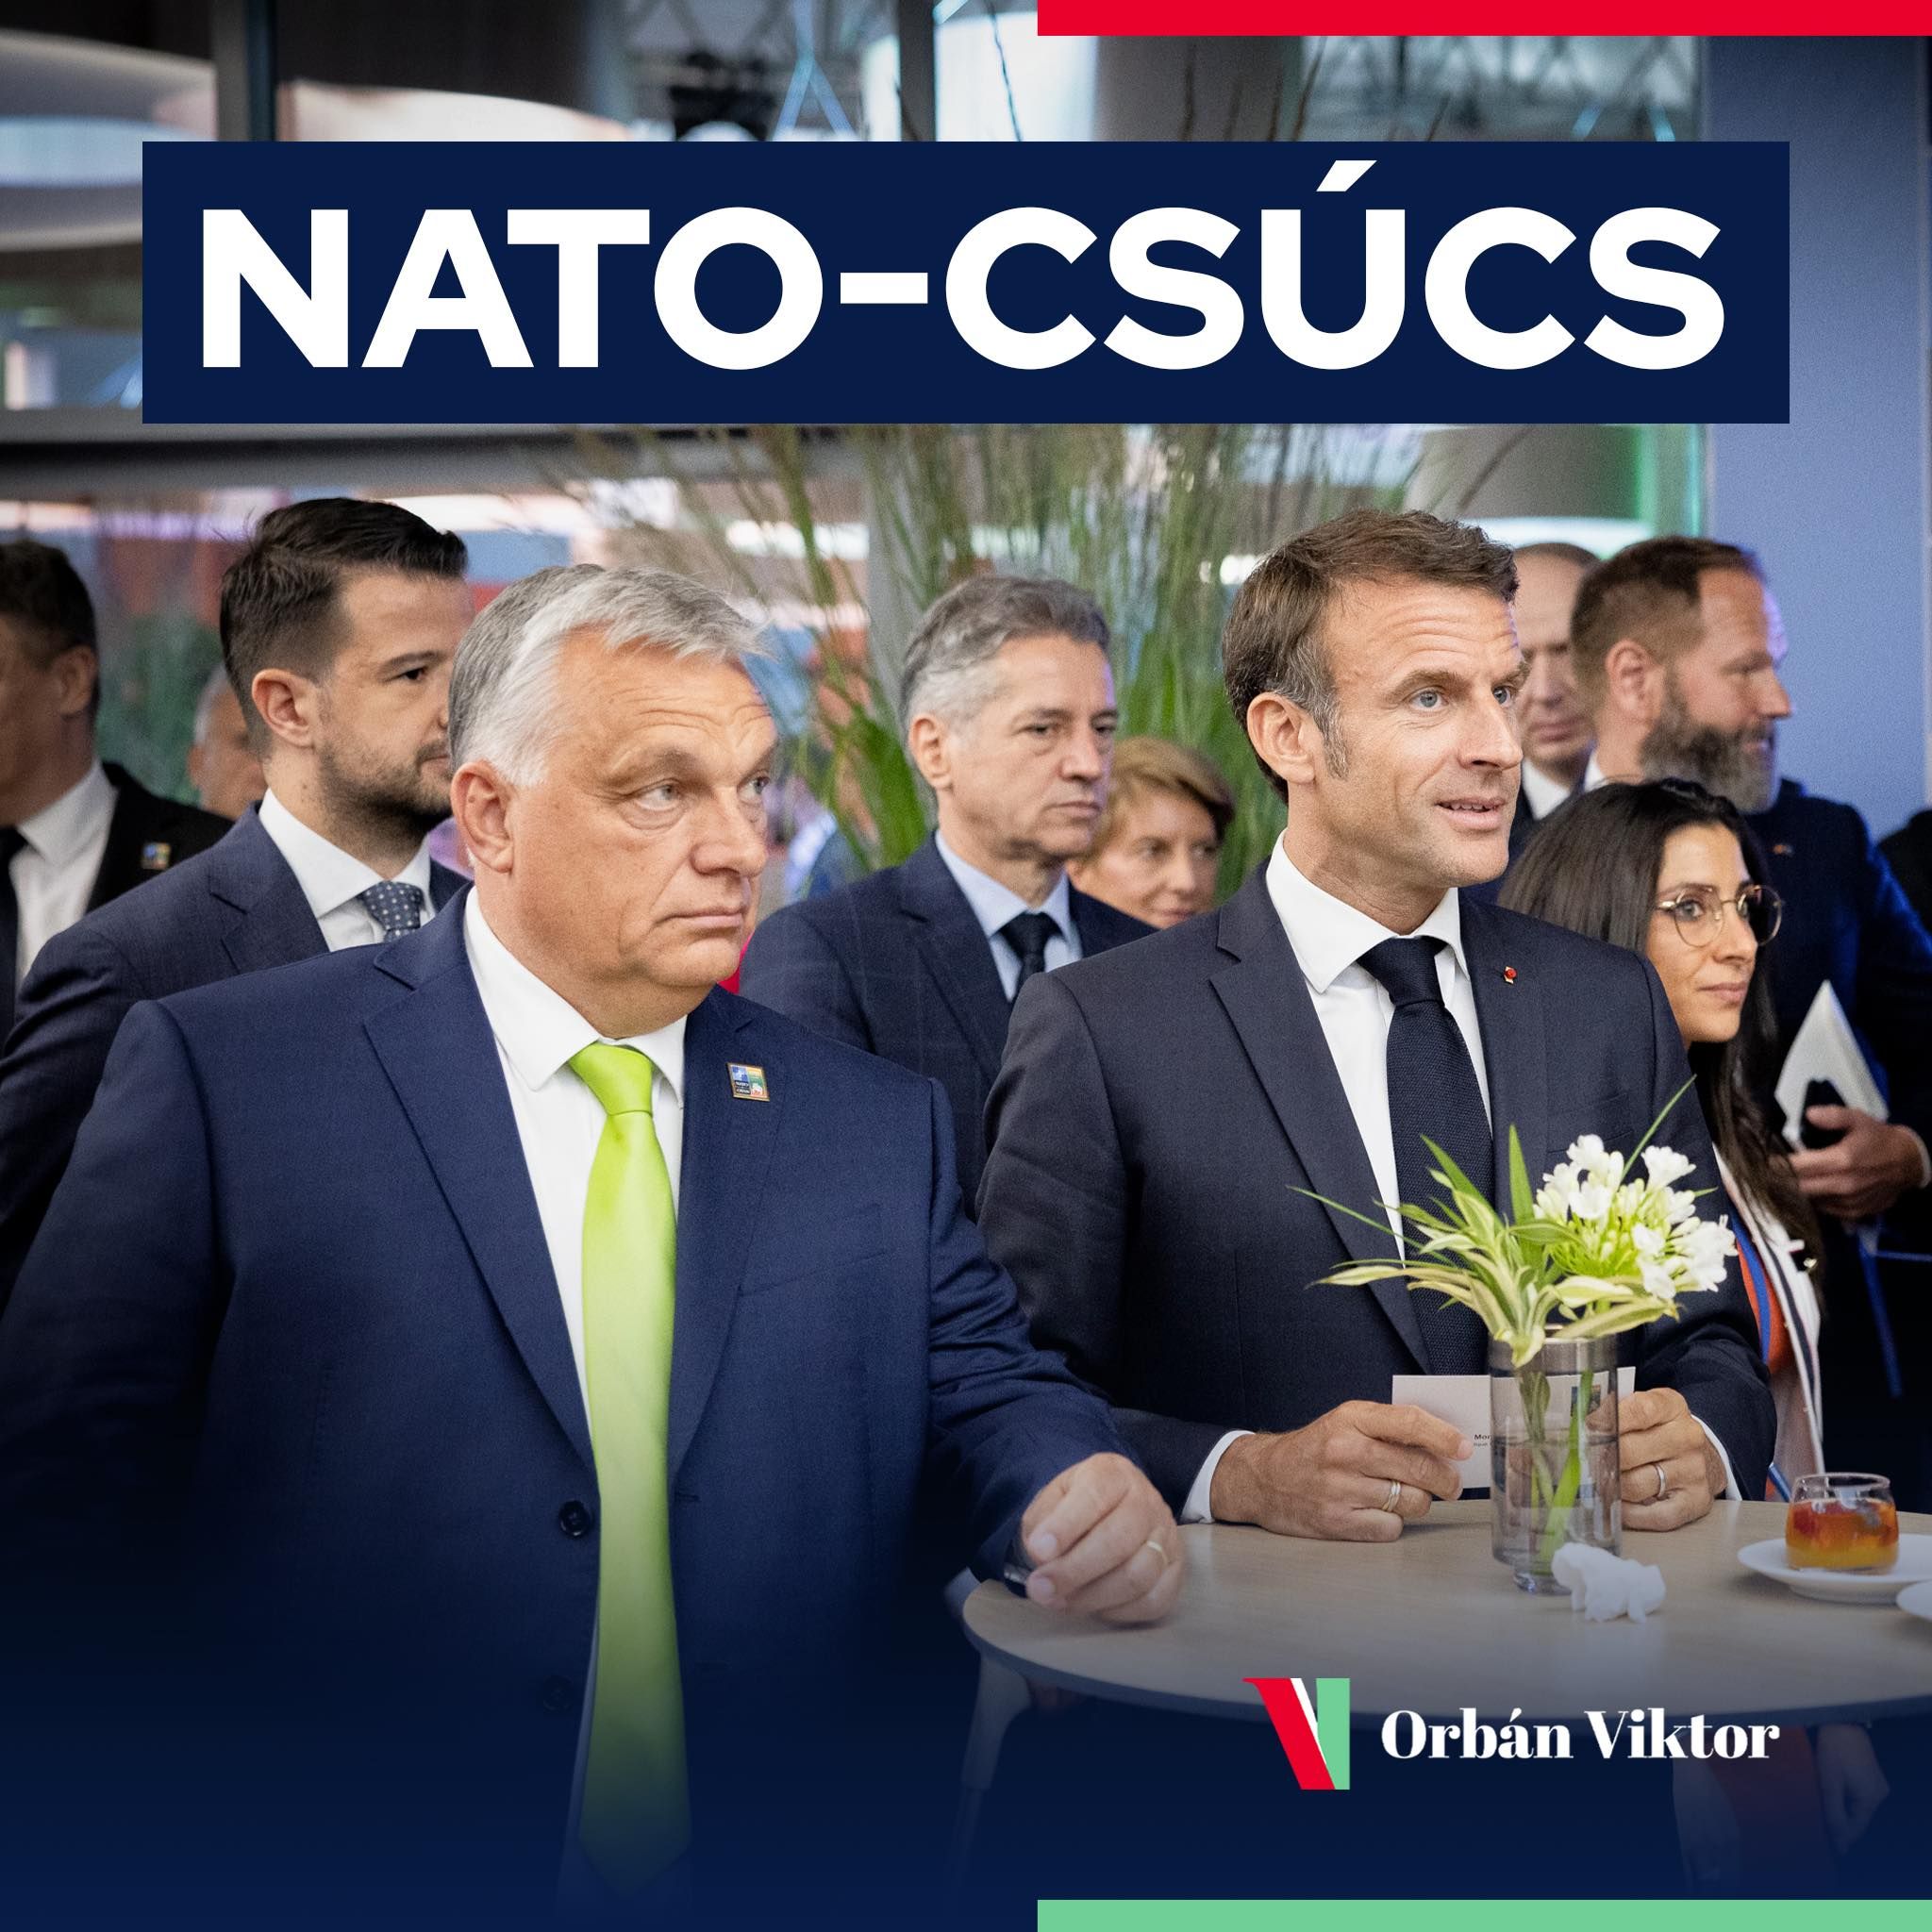 Mozgásteret nyertek Orbánék: a török nemzetgyűlés októberben dönthet a svéd NATO-csatlakozásról